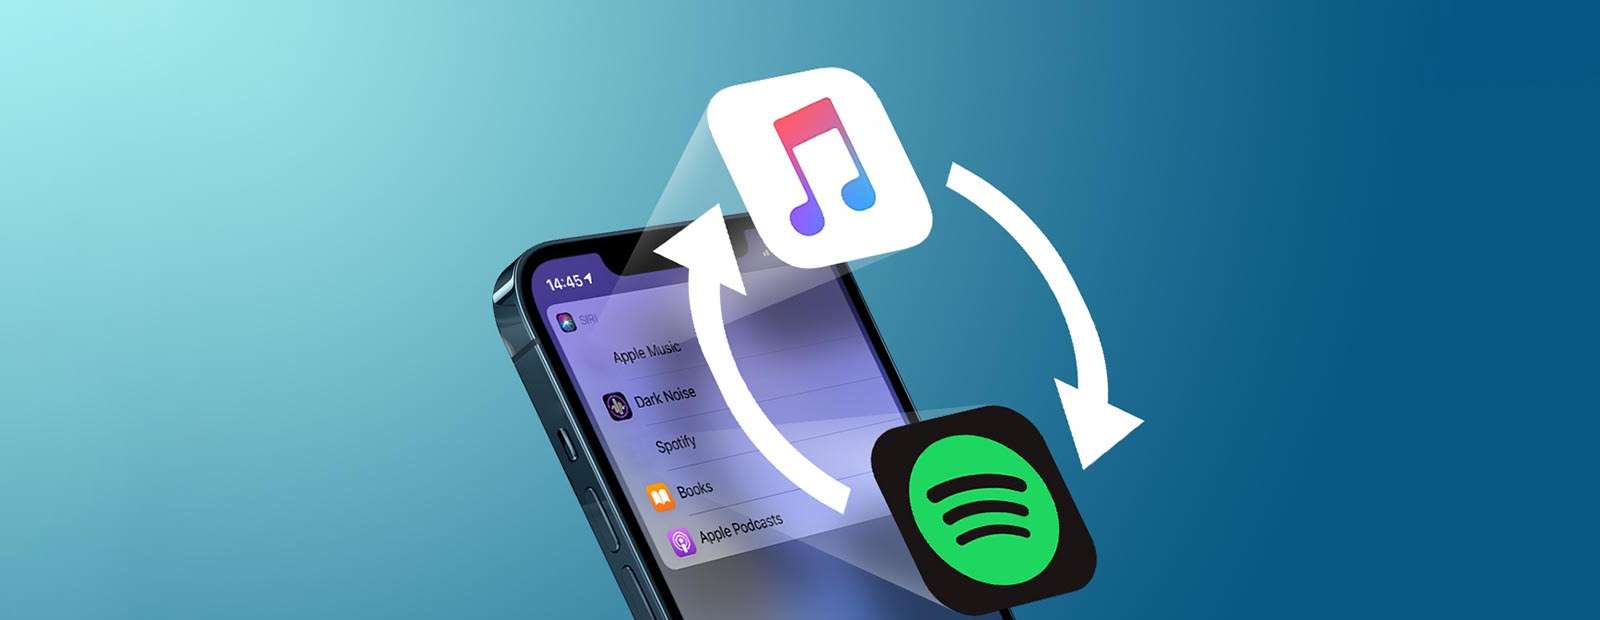 iOS 14.5 музыкальный сервис по умолчанию